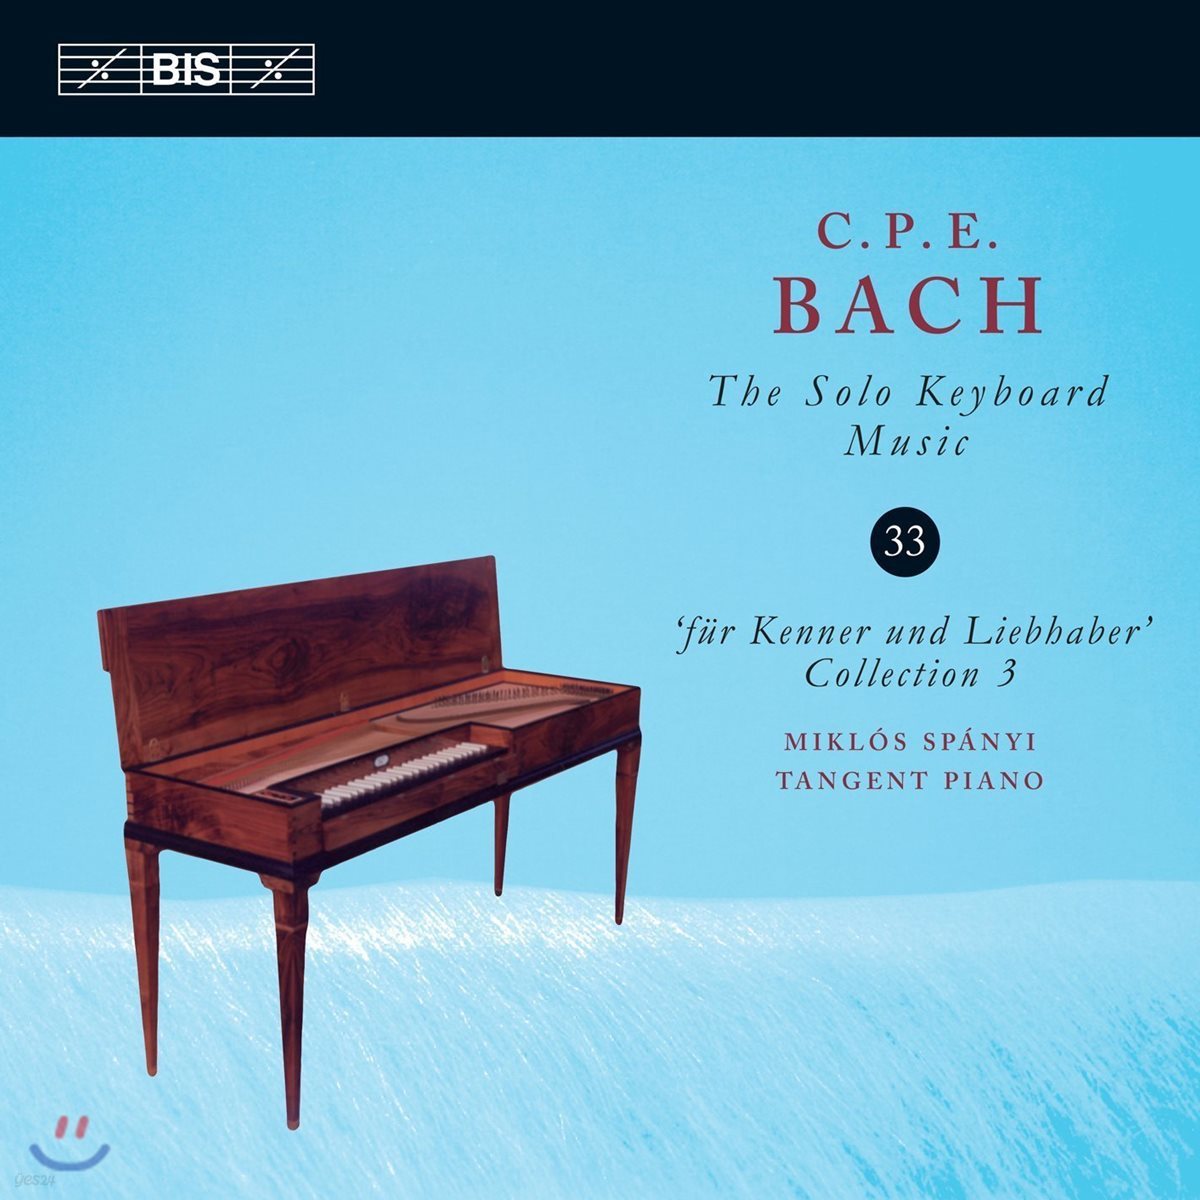 Miklos Spanyi 칼 필립 엠마누엘 바흐: 솔로 키보드 음악 33집 (C.P.E. Bach: The Solo Keyboard Music Vol.33)